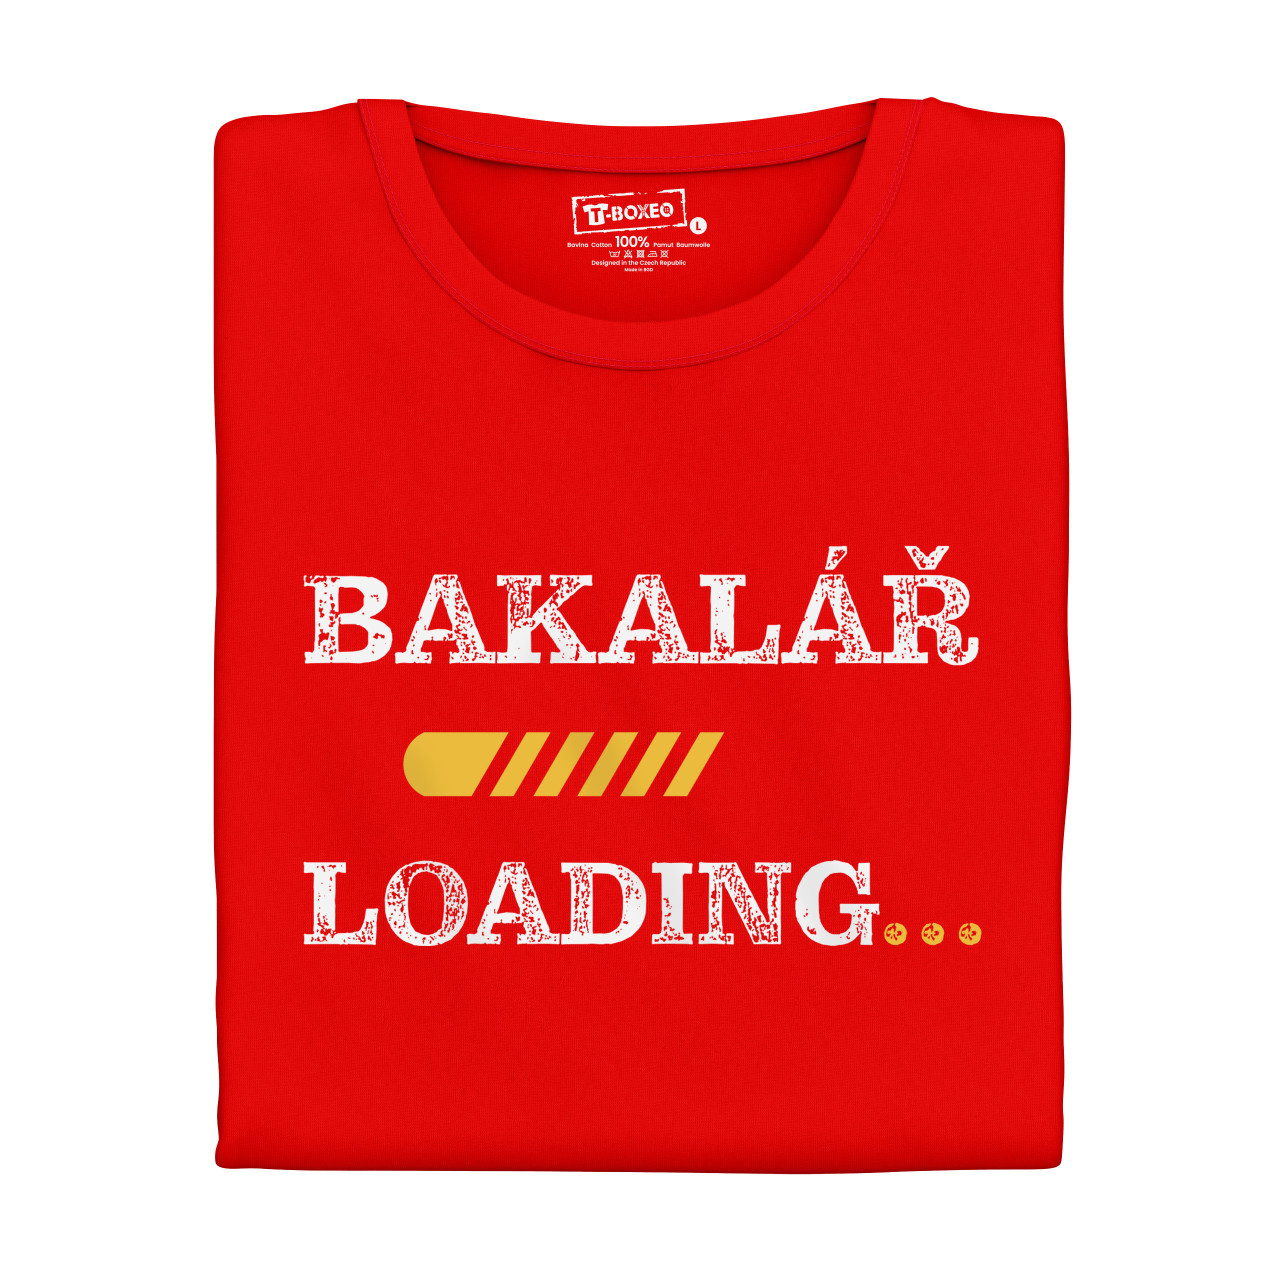 Dámské tričko s potiskem “Bakalář loading”